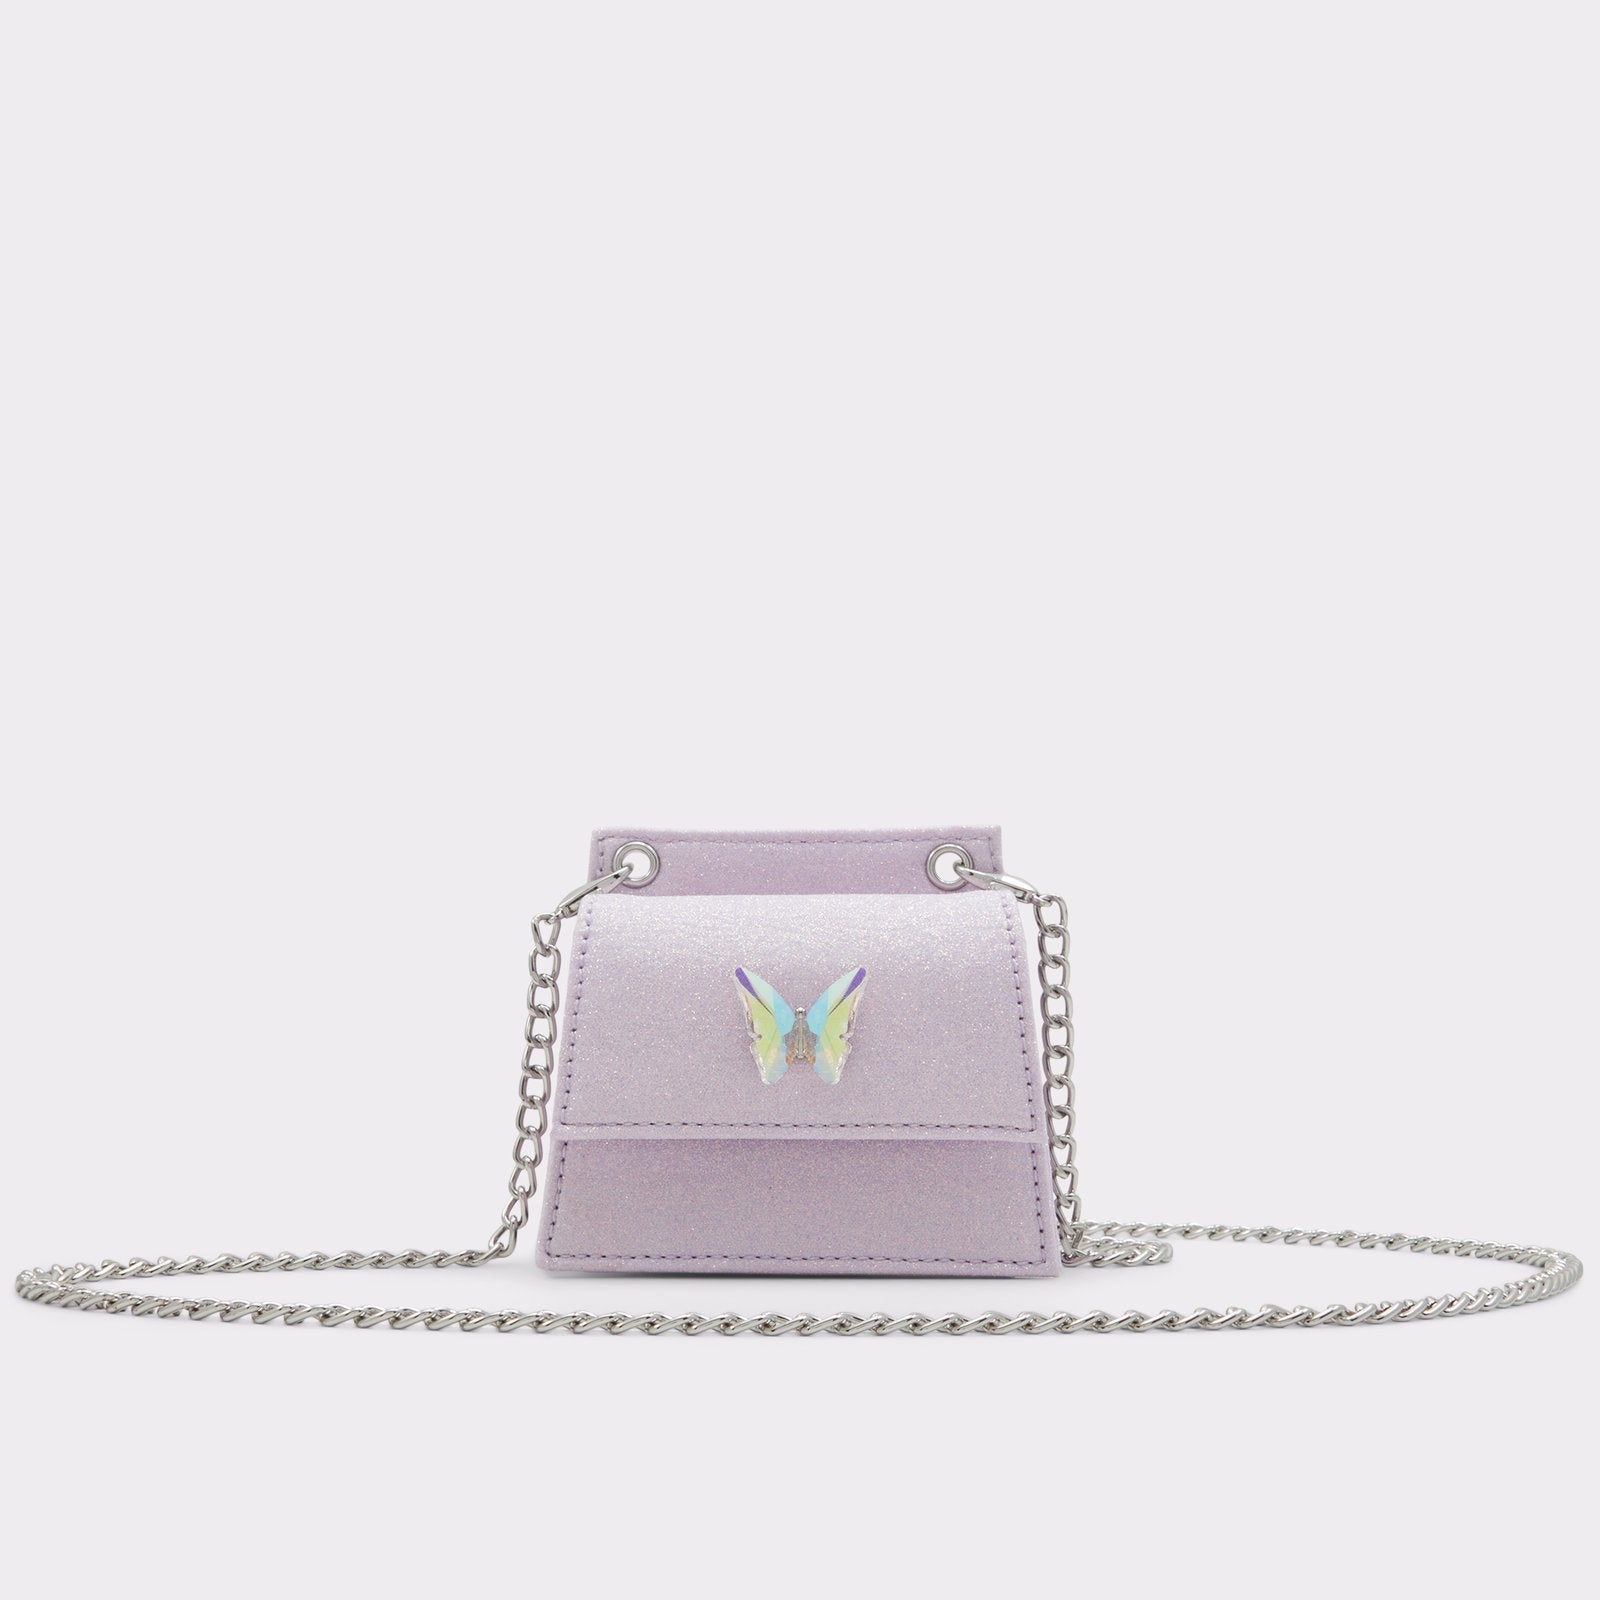 Aldo Women’s Cross Body Bag Karliee (Light Purple)